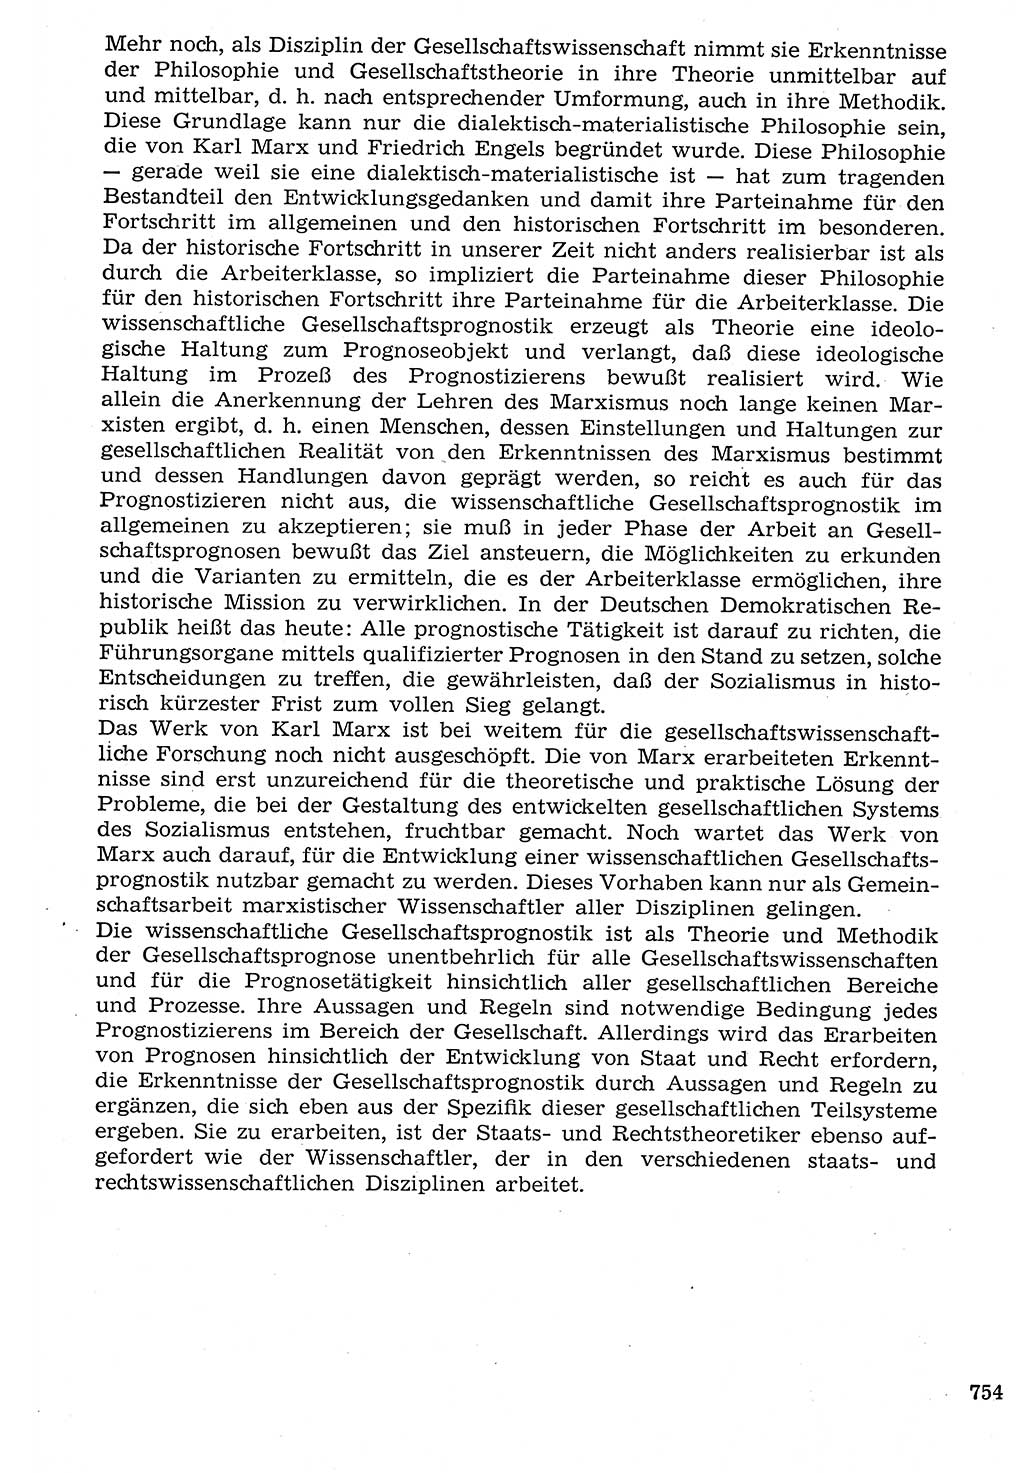 Staat und Recht (StuR), 17. Jahrgang [Deutsche Demokratische Republik (DDR)] 1968, Seite 754 (StuR DDR 1968, S. 754)